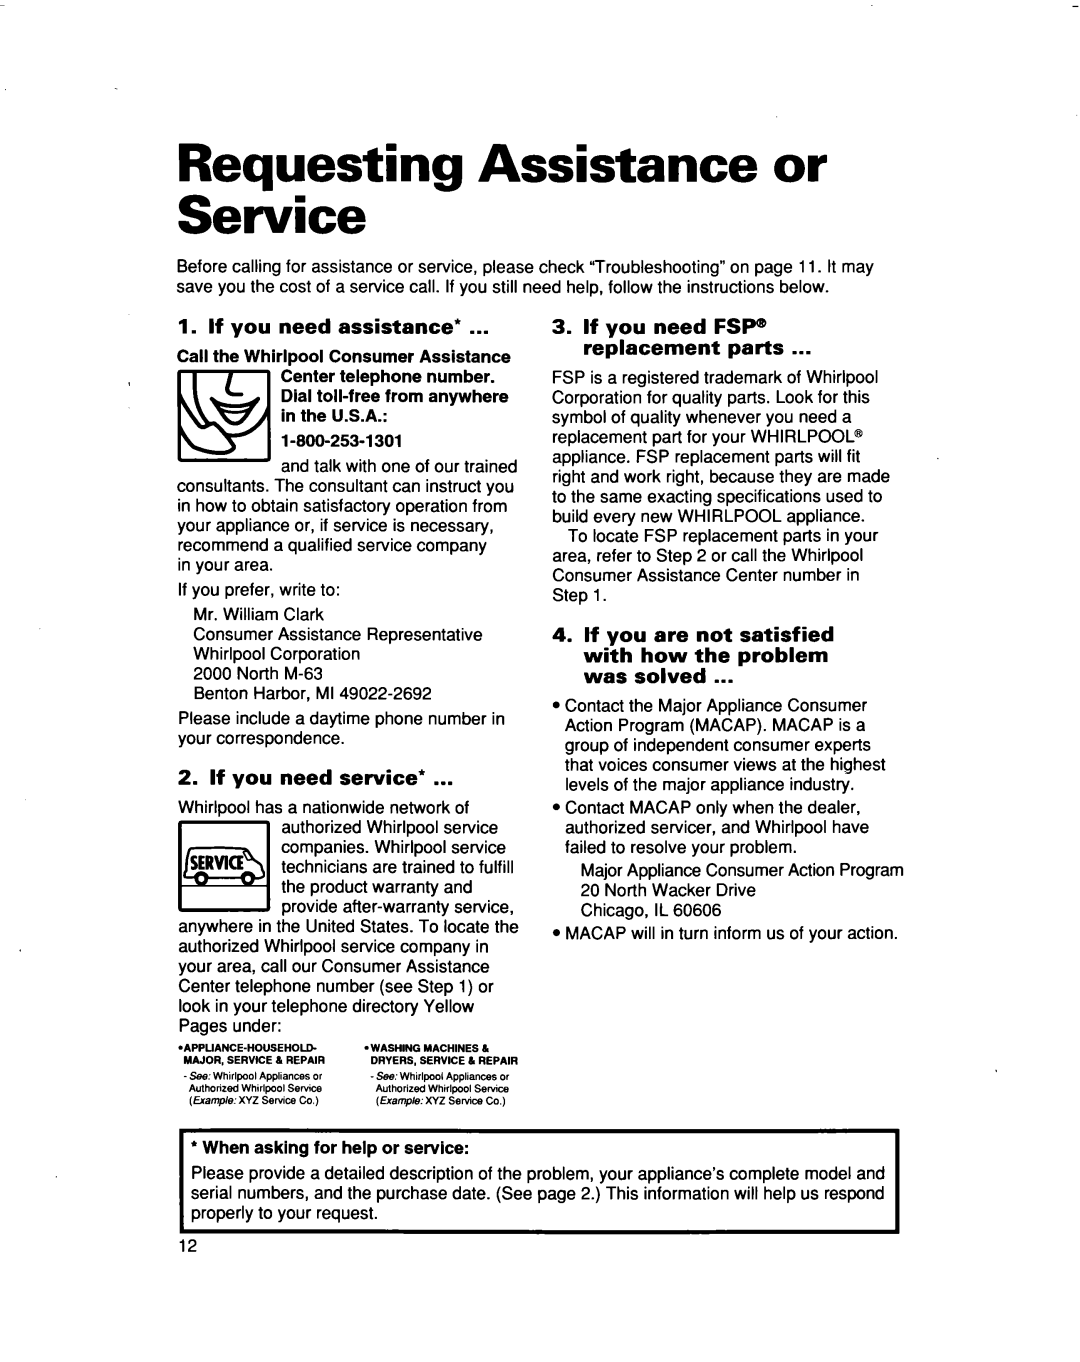 Whirlpool ACM122, ACM102 warranty Requesting Assistance or Service, If you need assistance, If you need service 